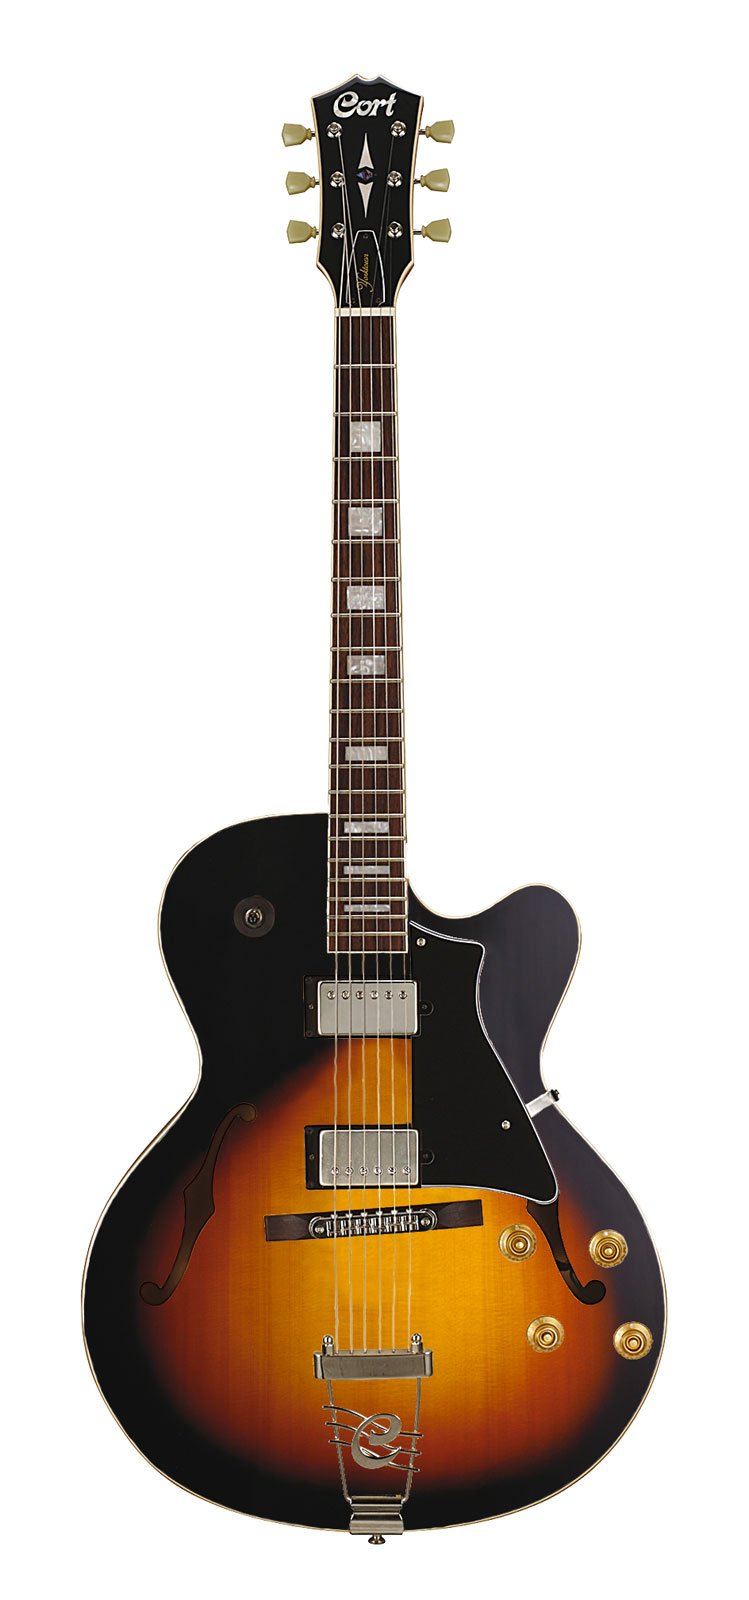 Cort B-001-0088-2 Elektrische Gitarre Hollow Body im Vintage-Stil